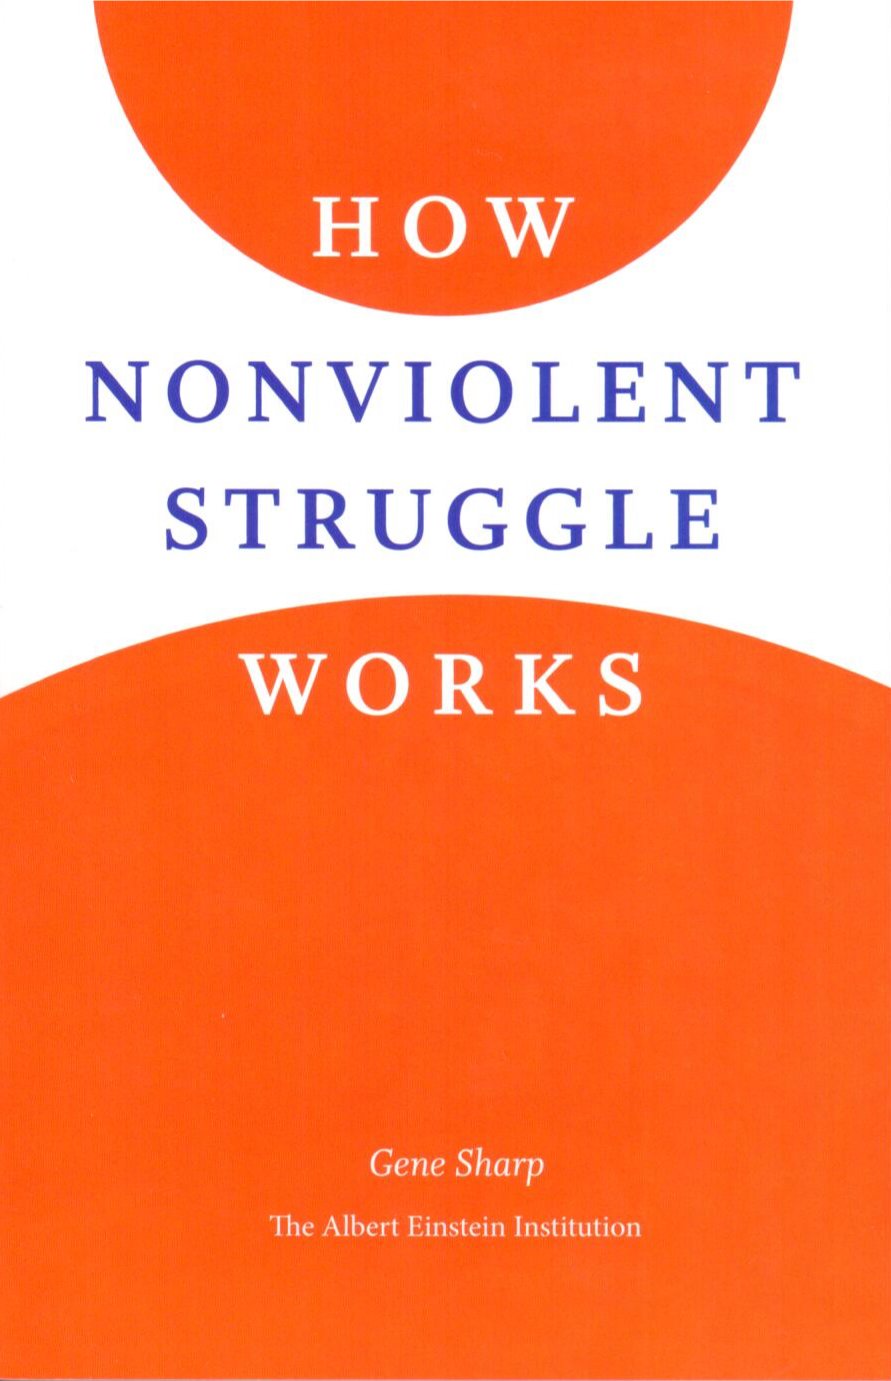 How Non-violent Struggle Works